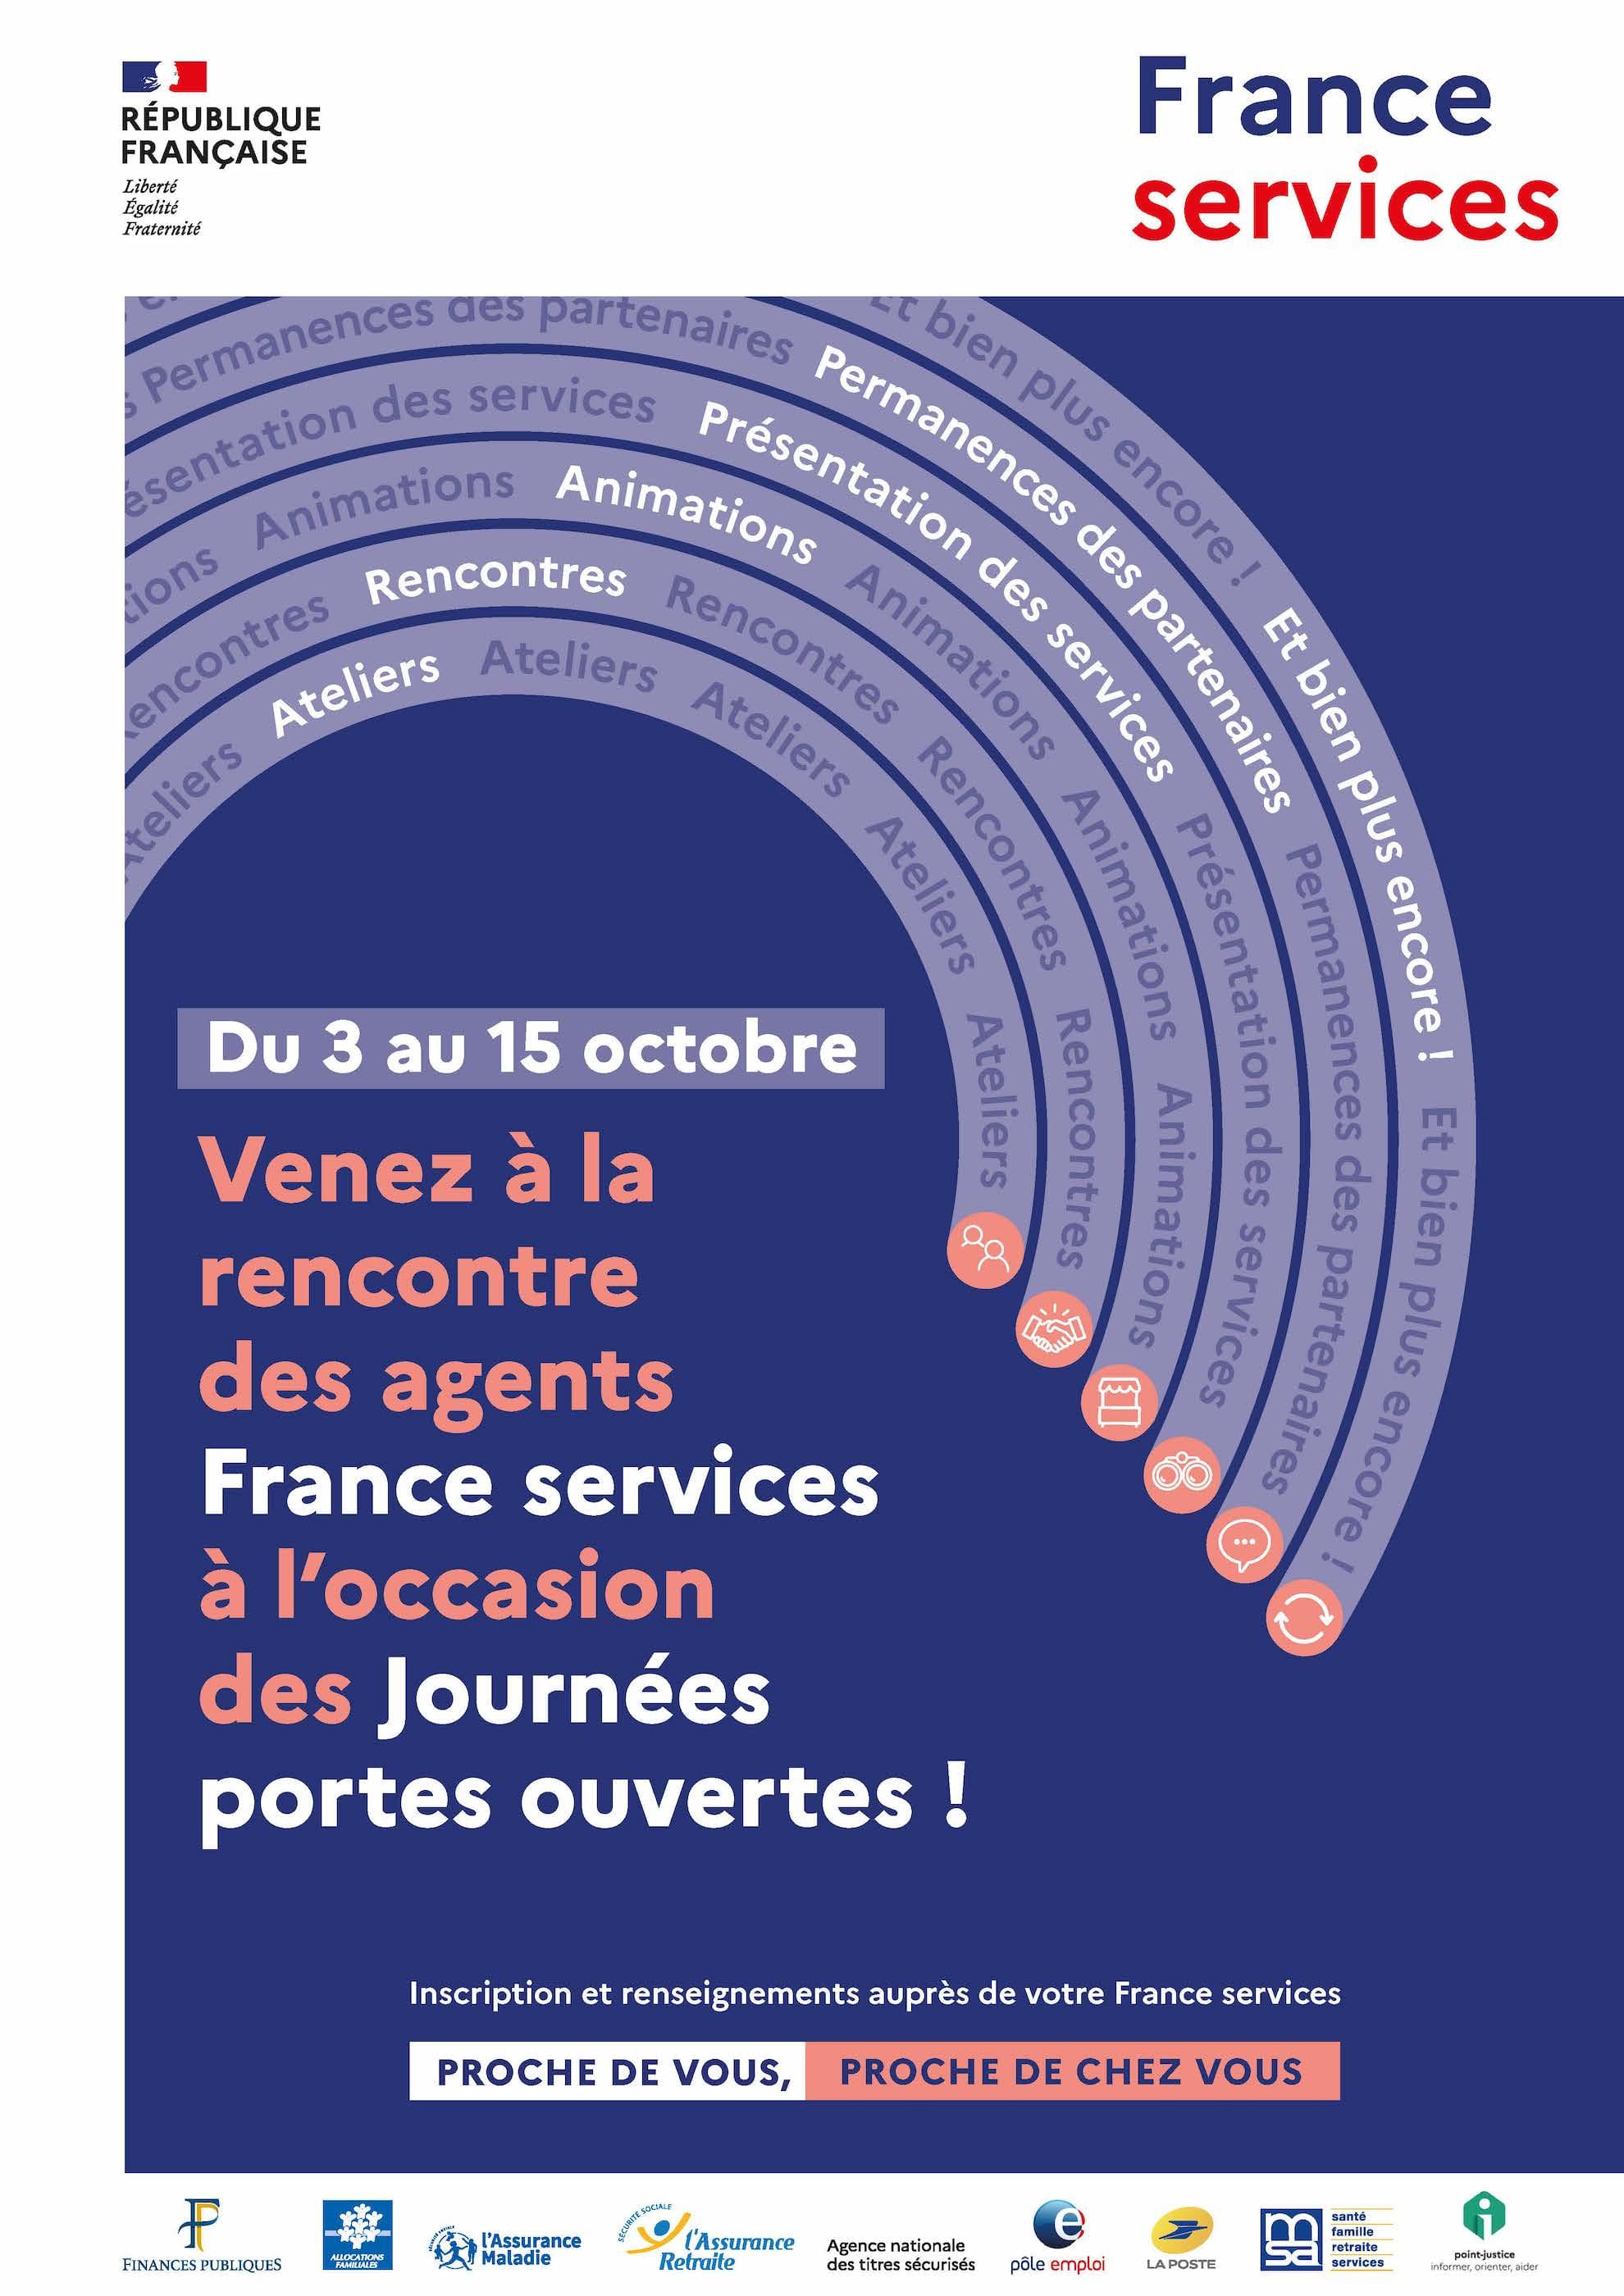 France Services Buchelay participe aux Journées portes ouvertes du 3 au 15 octobre.